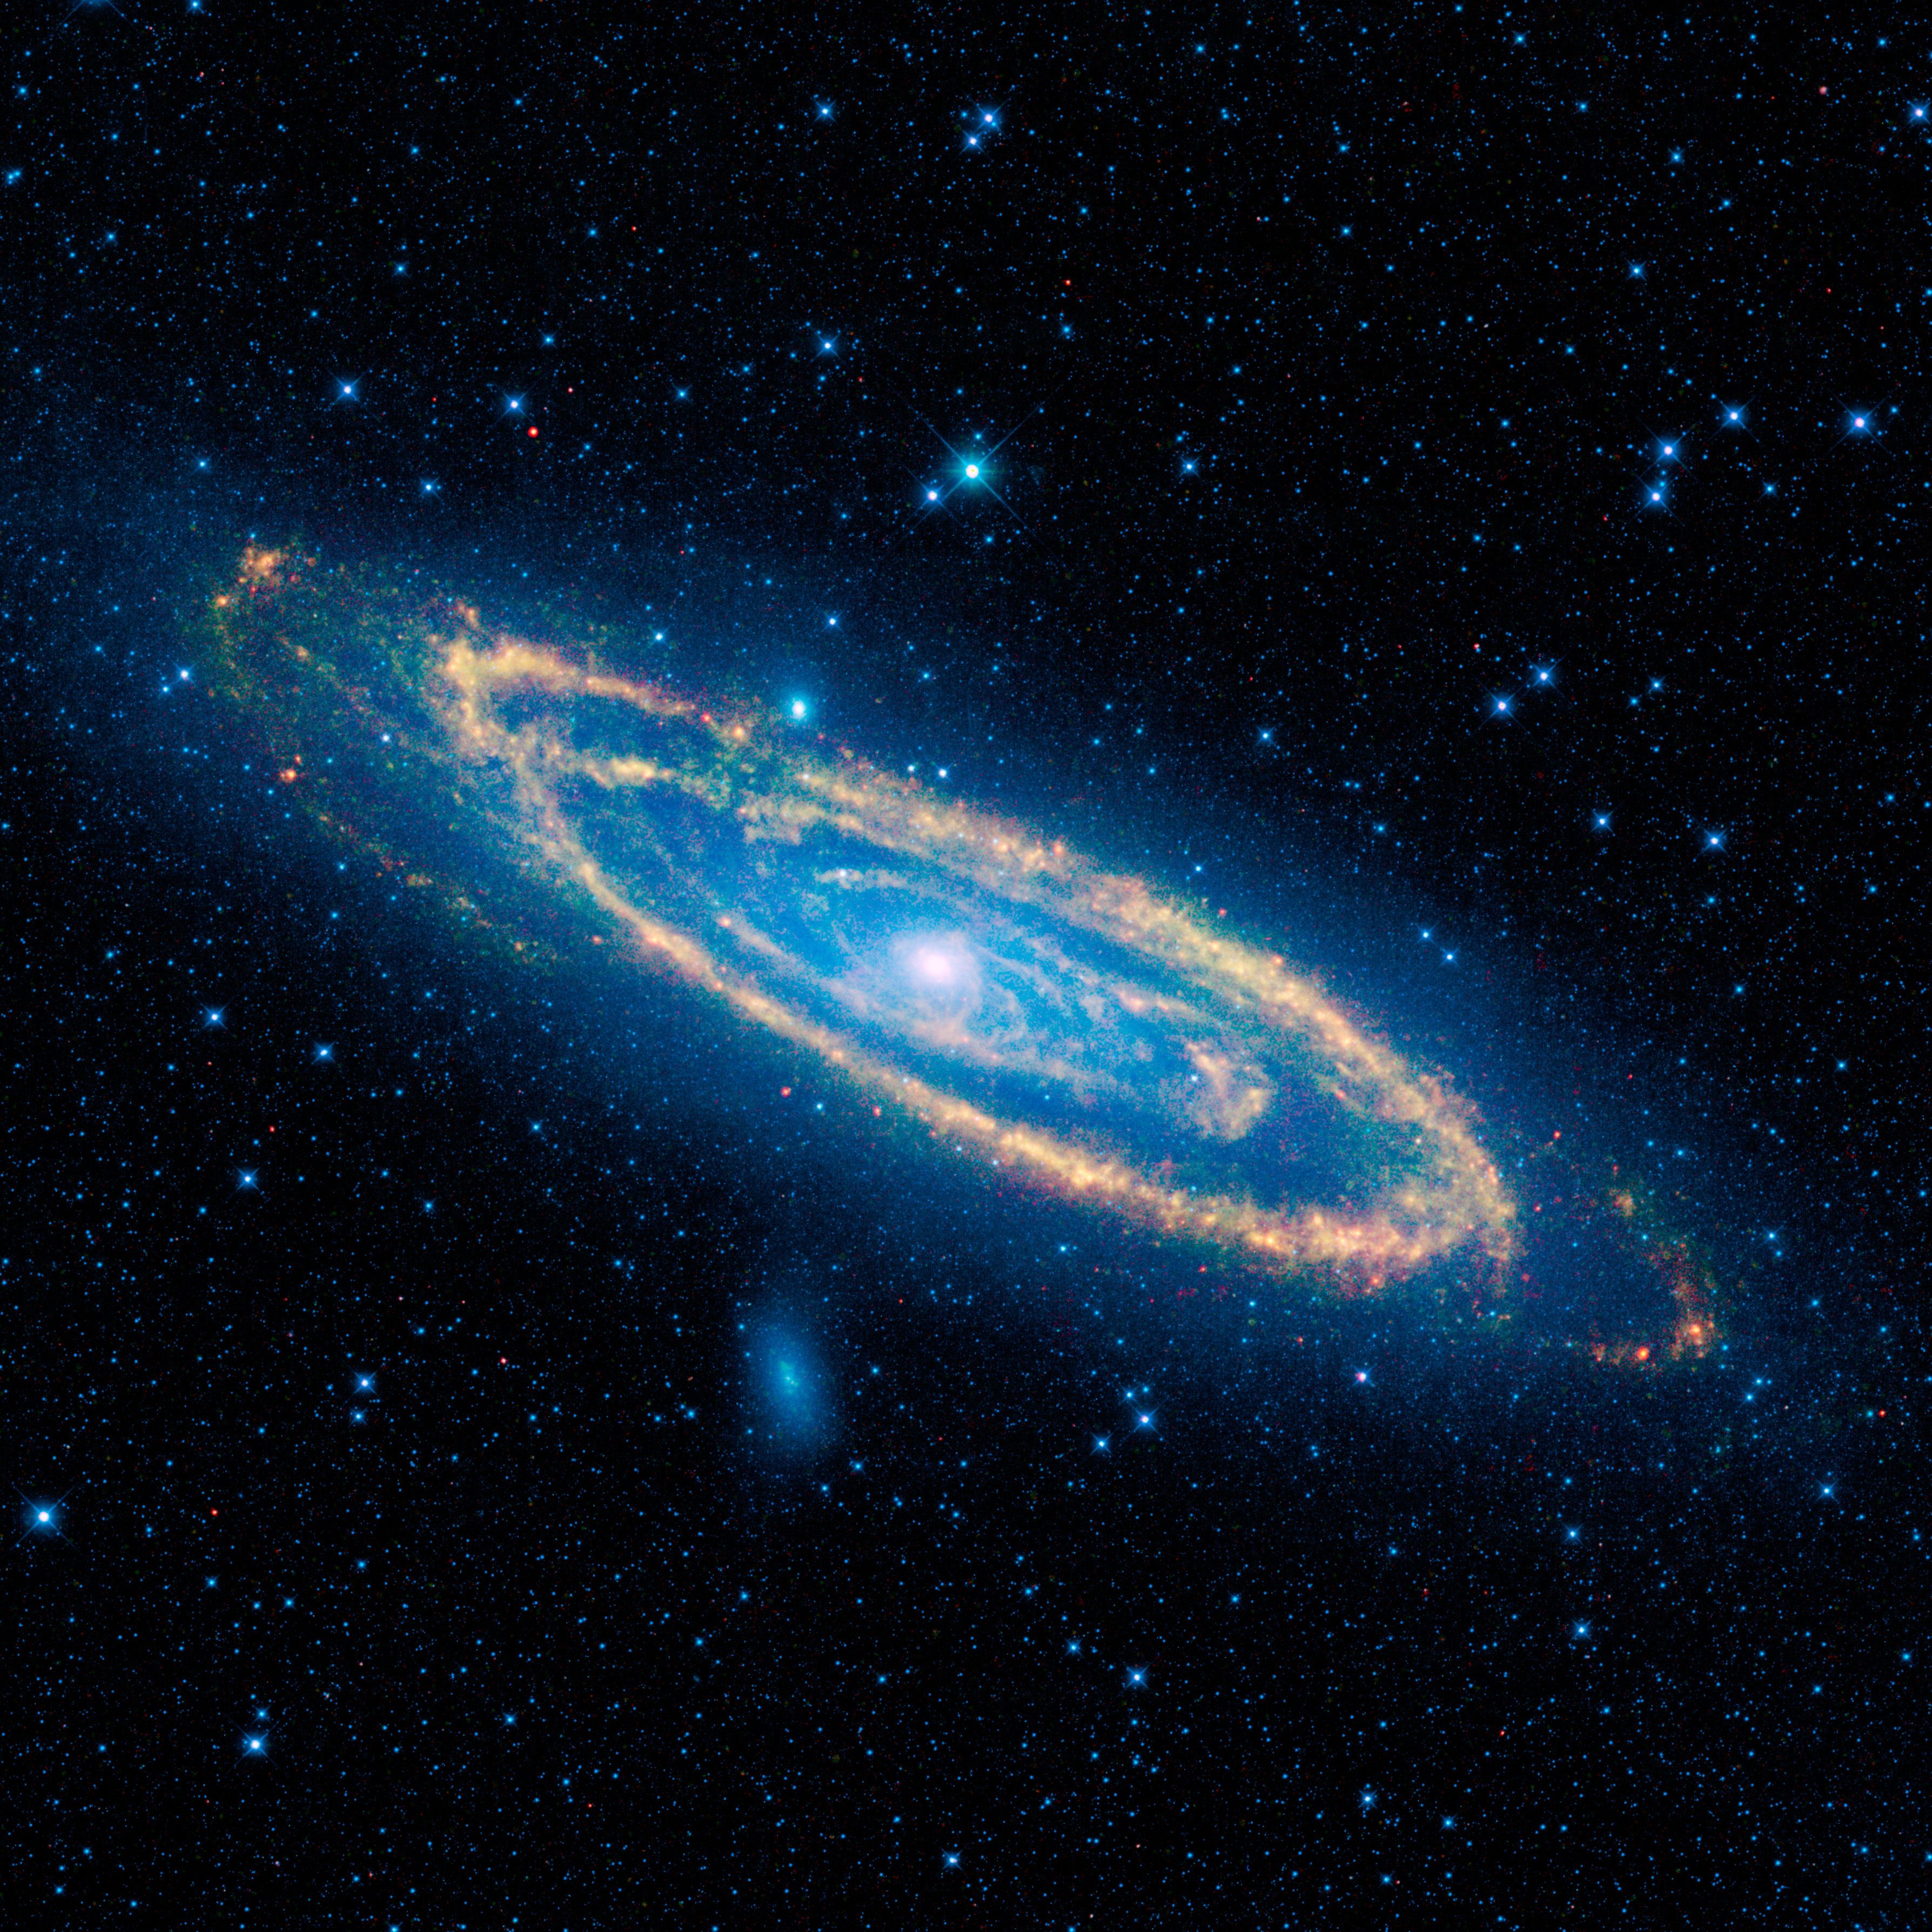 Galáxia de Andrômeda captada em infra-vermelho pelo telescópio espacial WISE, da NASA.